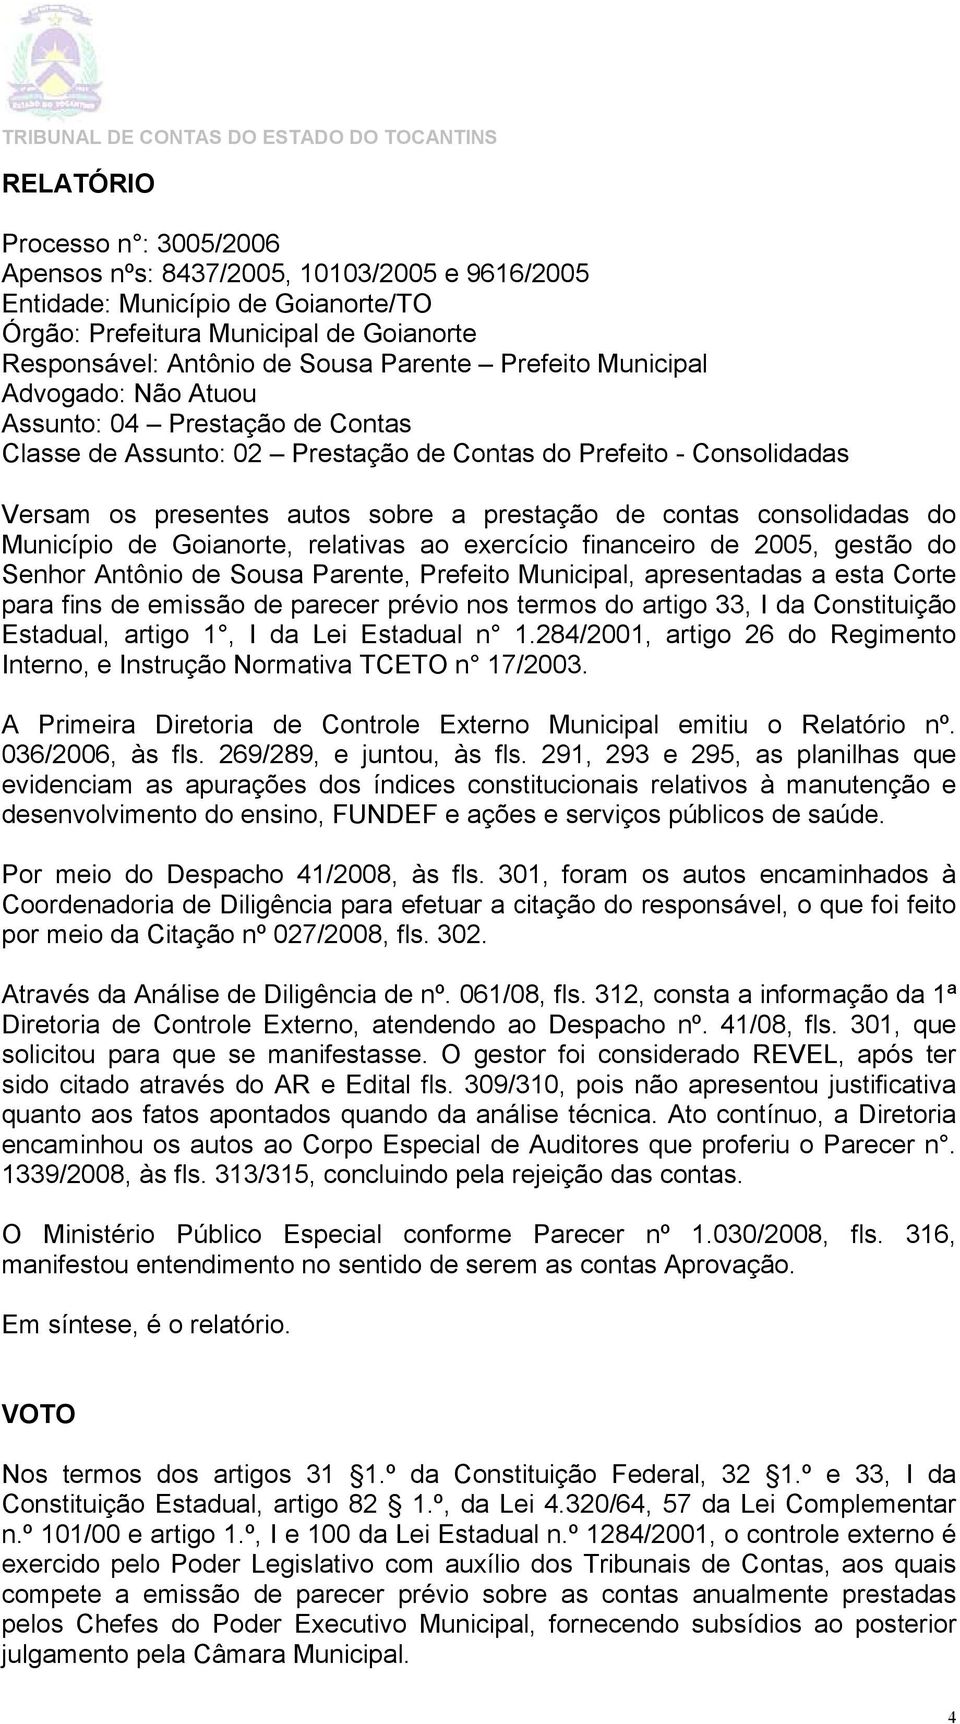 consolidadas do Município de Goianorte, relativas ao exercício financeiro de 2005, gestão do Senhor Antônio de Sousa Parente, Prefeito Municipal, apresentadas a esta Corte paraa fins de emissão de